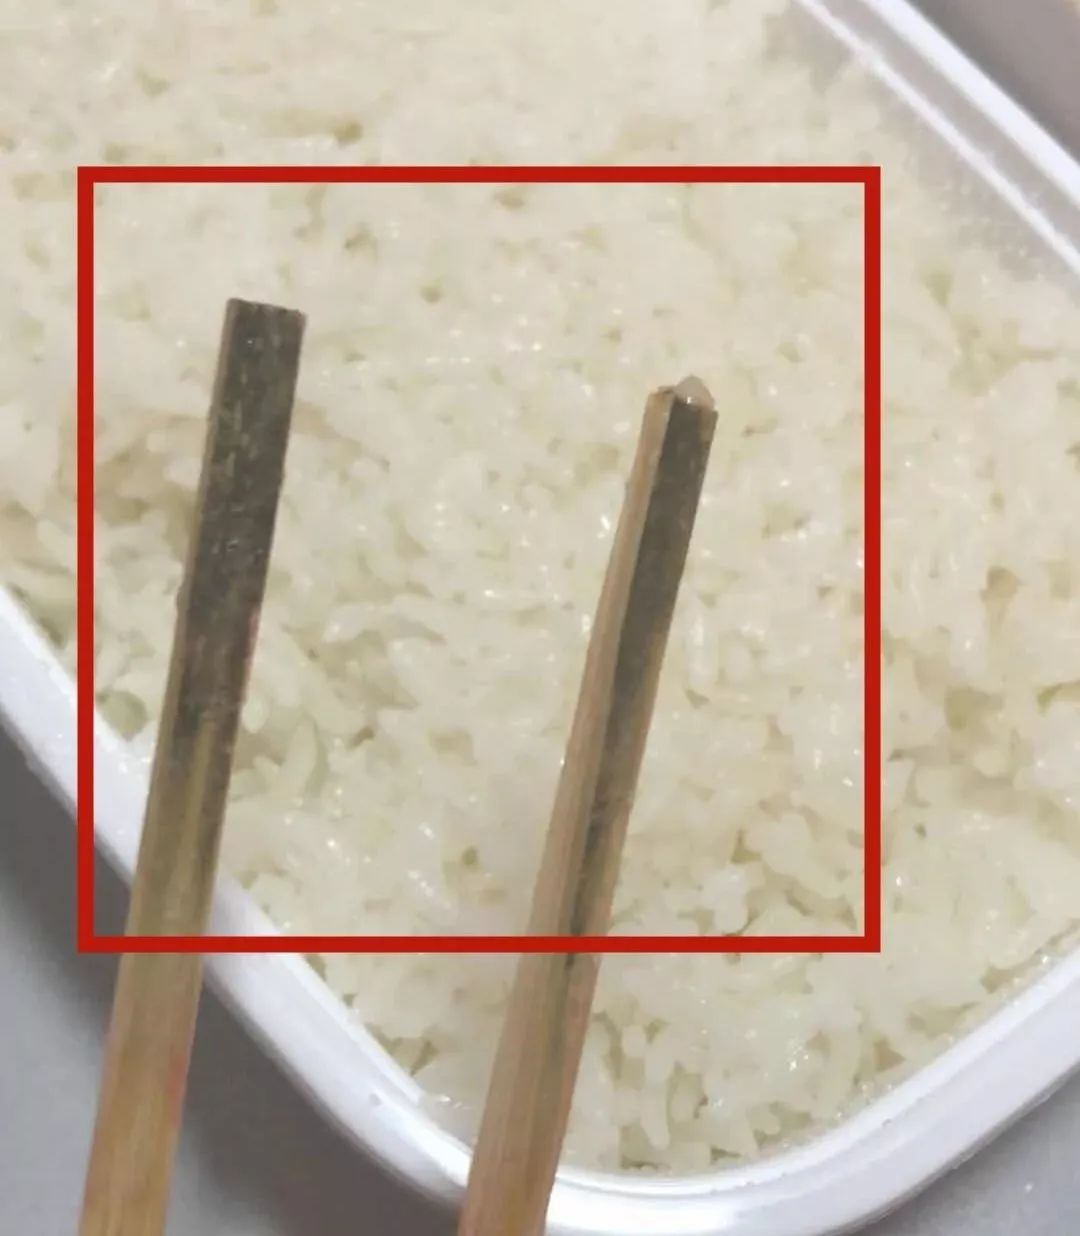 一次性筷子已发霉变质声音:使用发霉筷后感不适因为是连锁品牌的